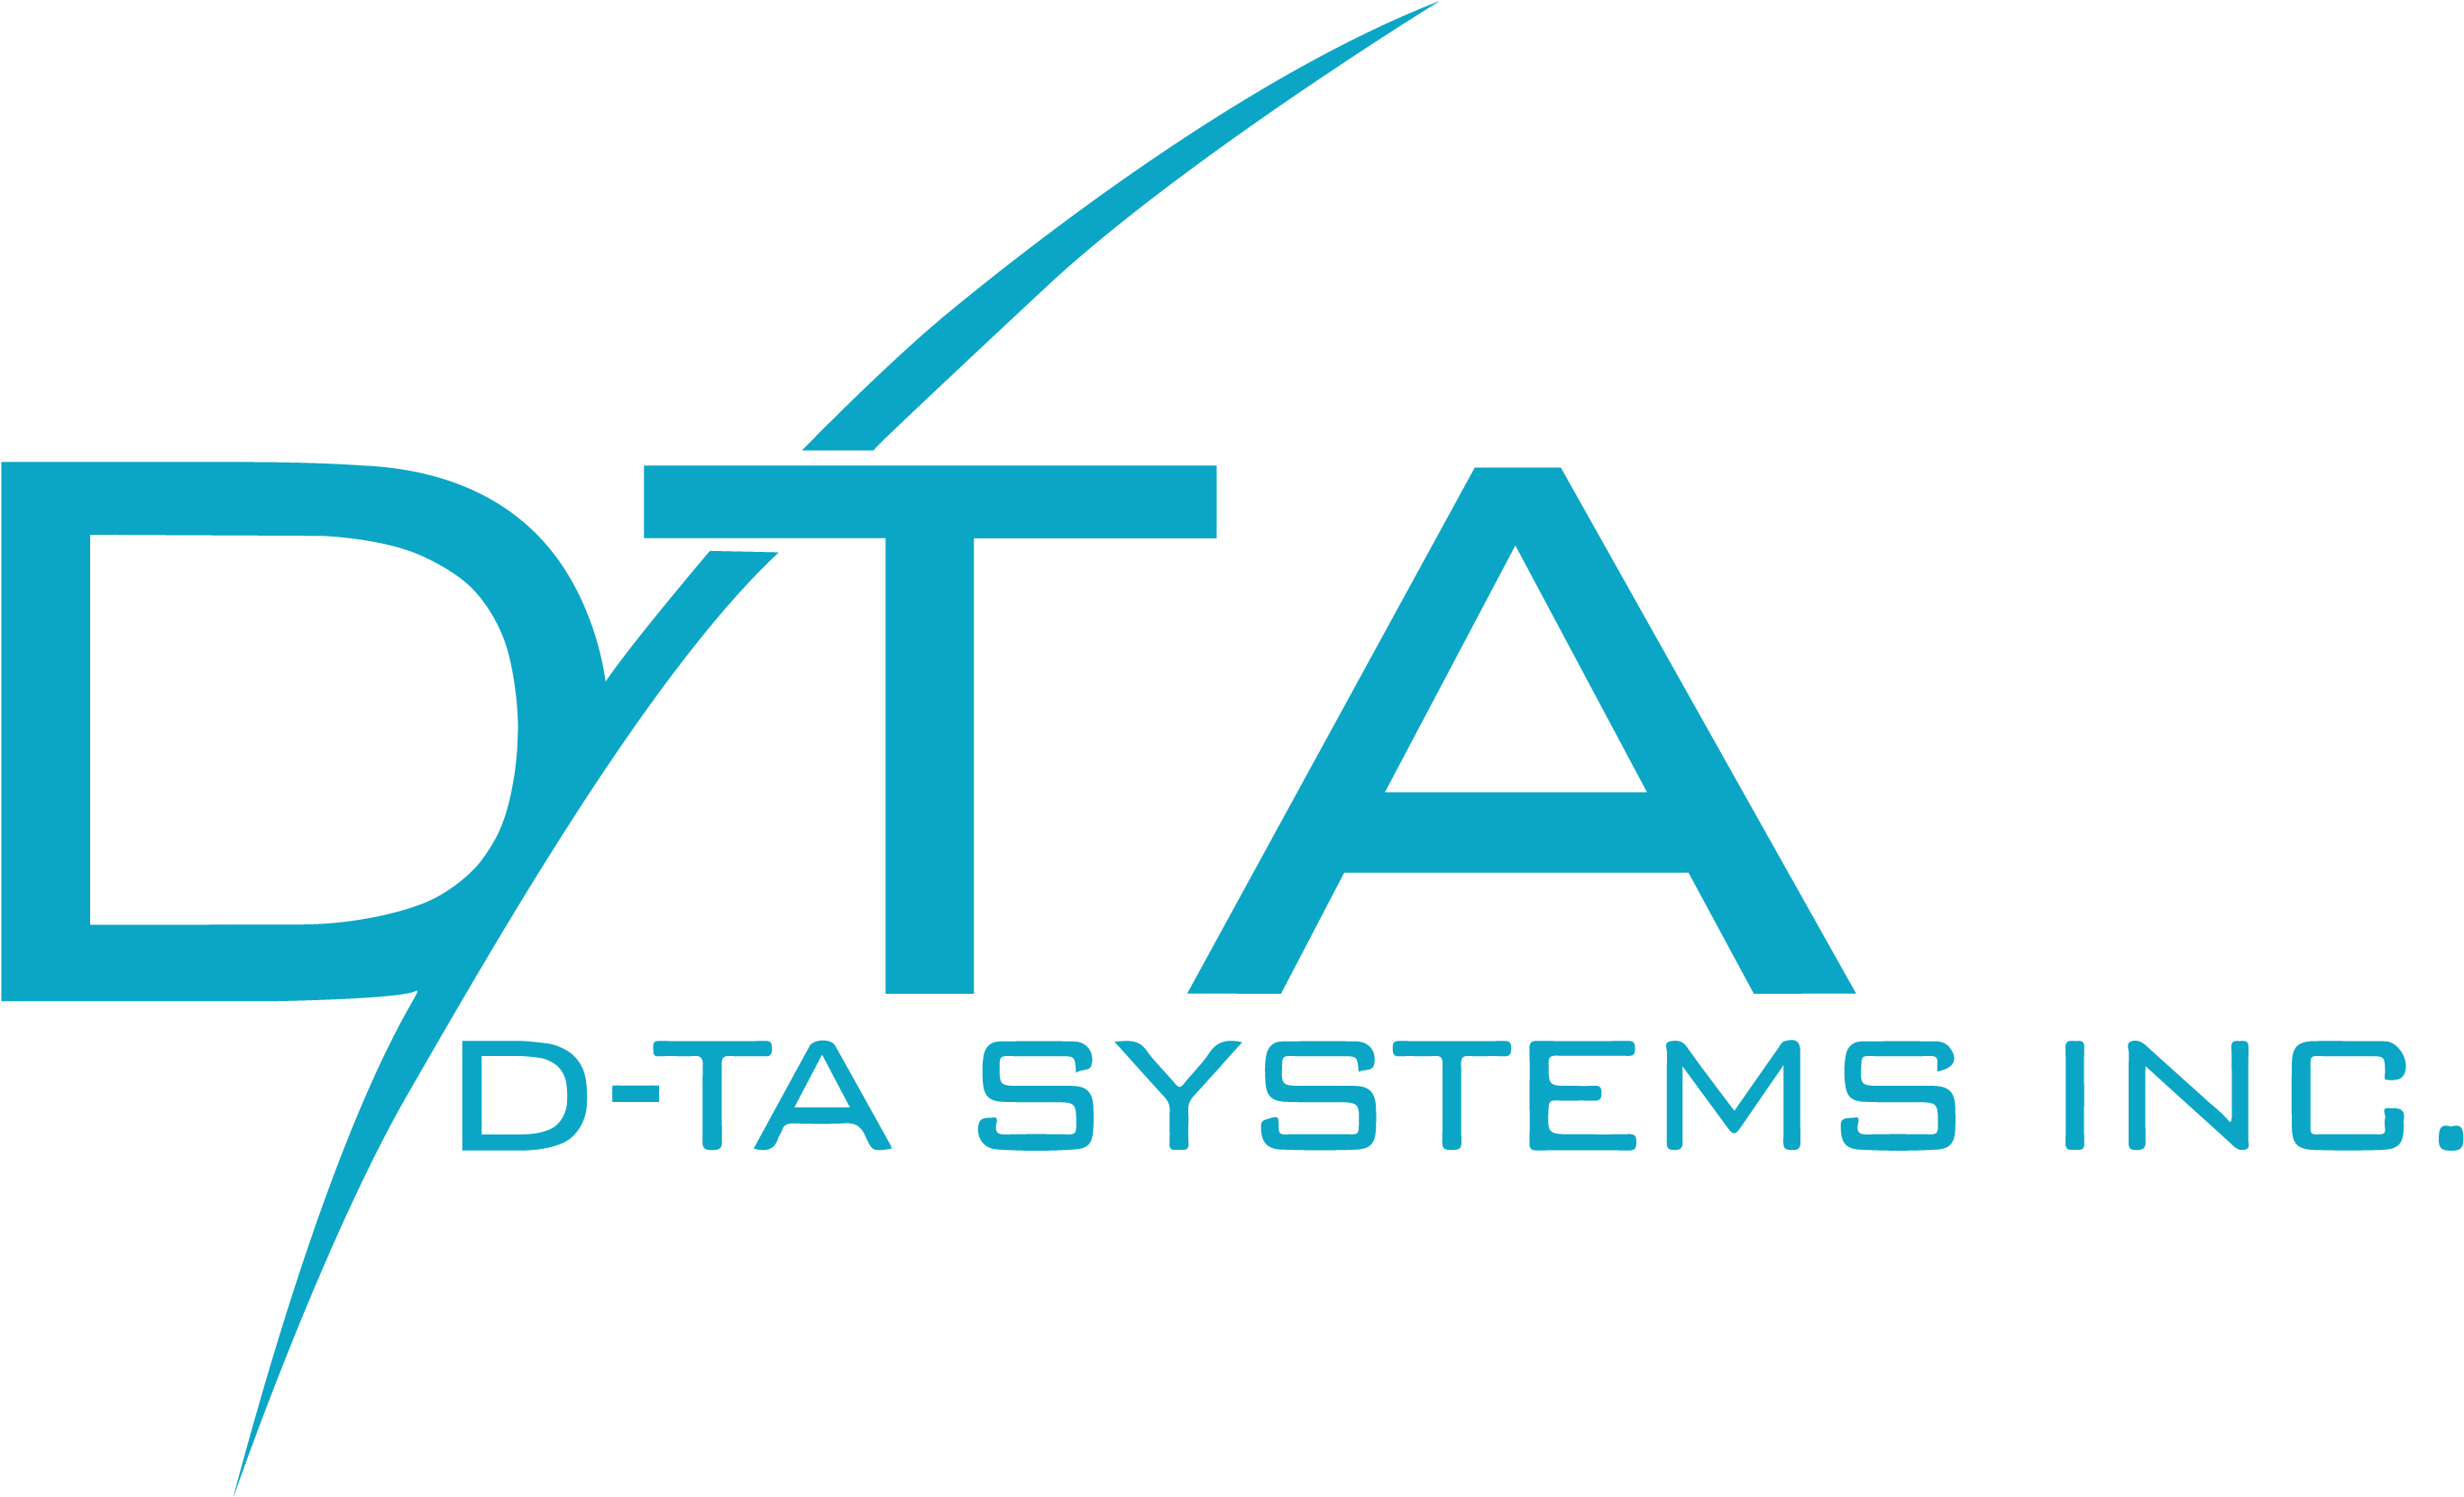 D-ta Systems Inc - D-ta Systems Inc (3414x1843)